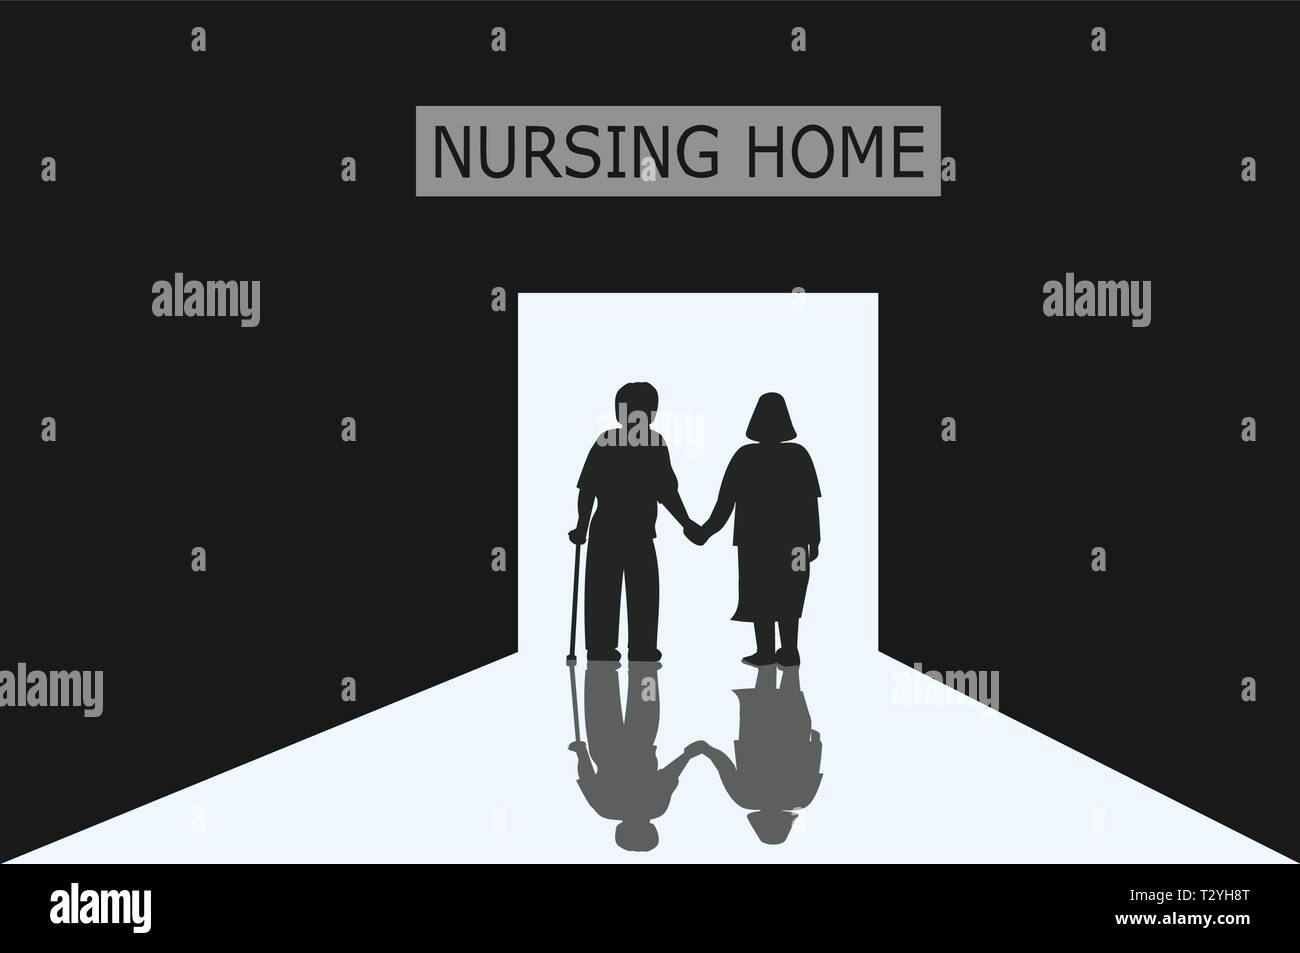 De vieux hommes et femmes qui sont des couples entrent dans la porte de la maison de soins infirmiers avec la lumière, le noir et blanc photo Illustration de Vecteur